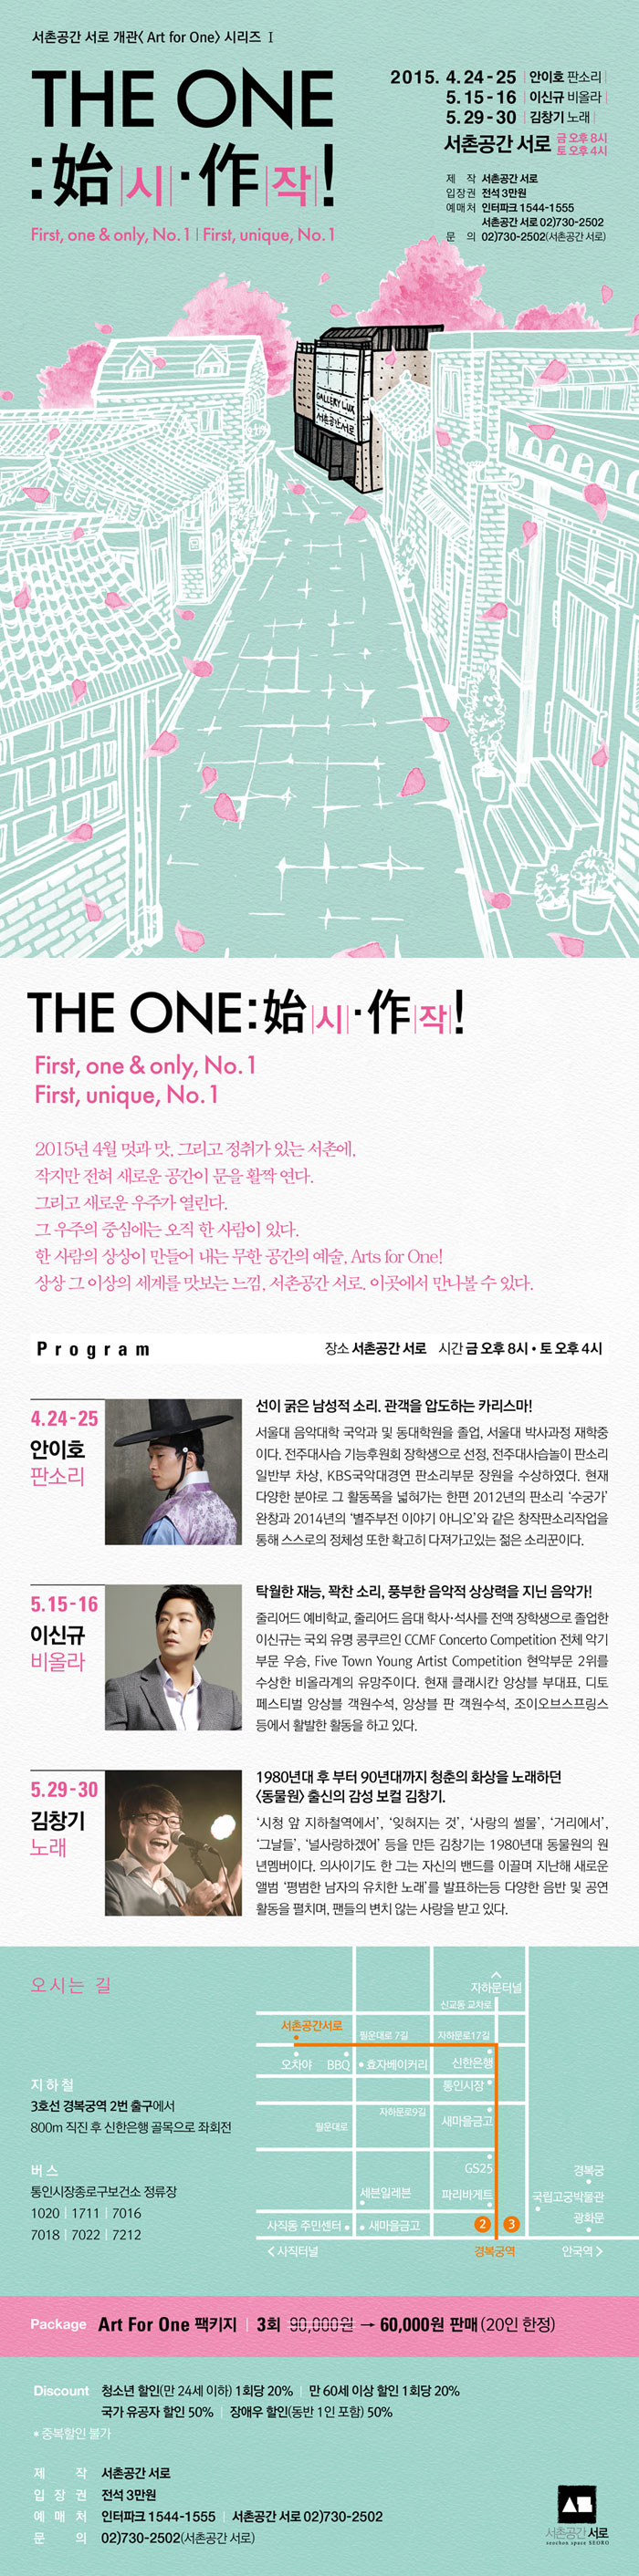 2015년 The One：시작！포스터_인터파크 2.jpg